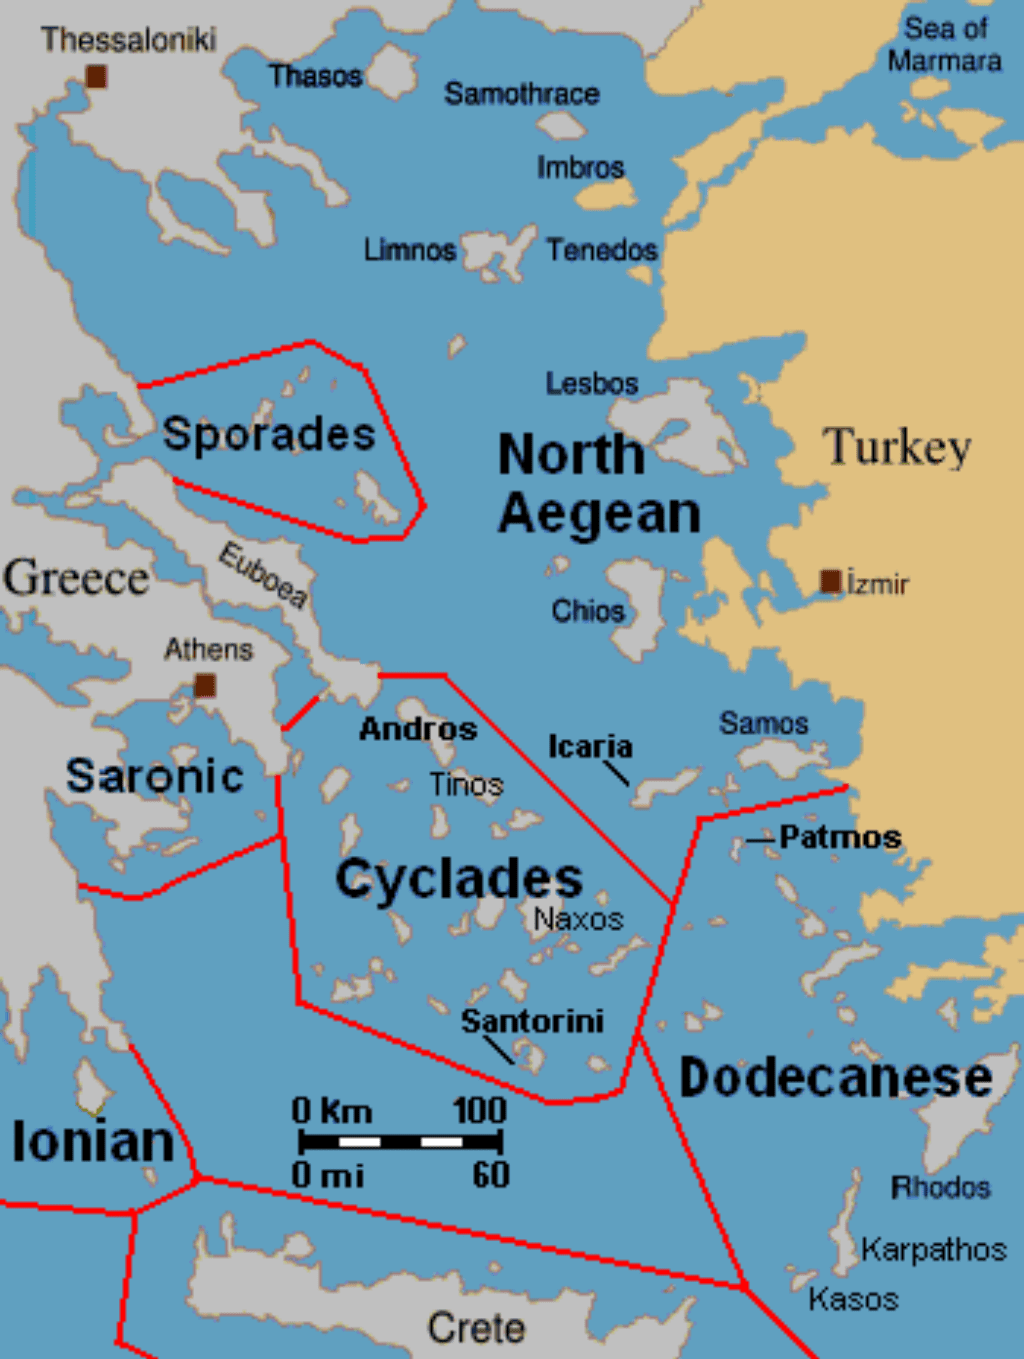 The island groups of the Aegean Sea.